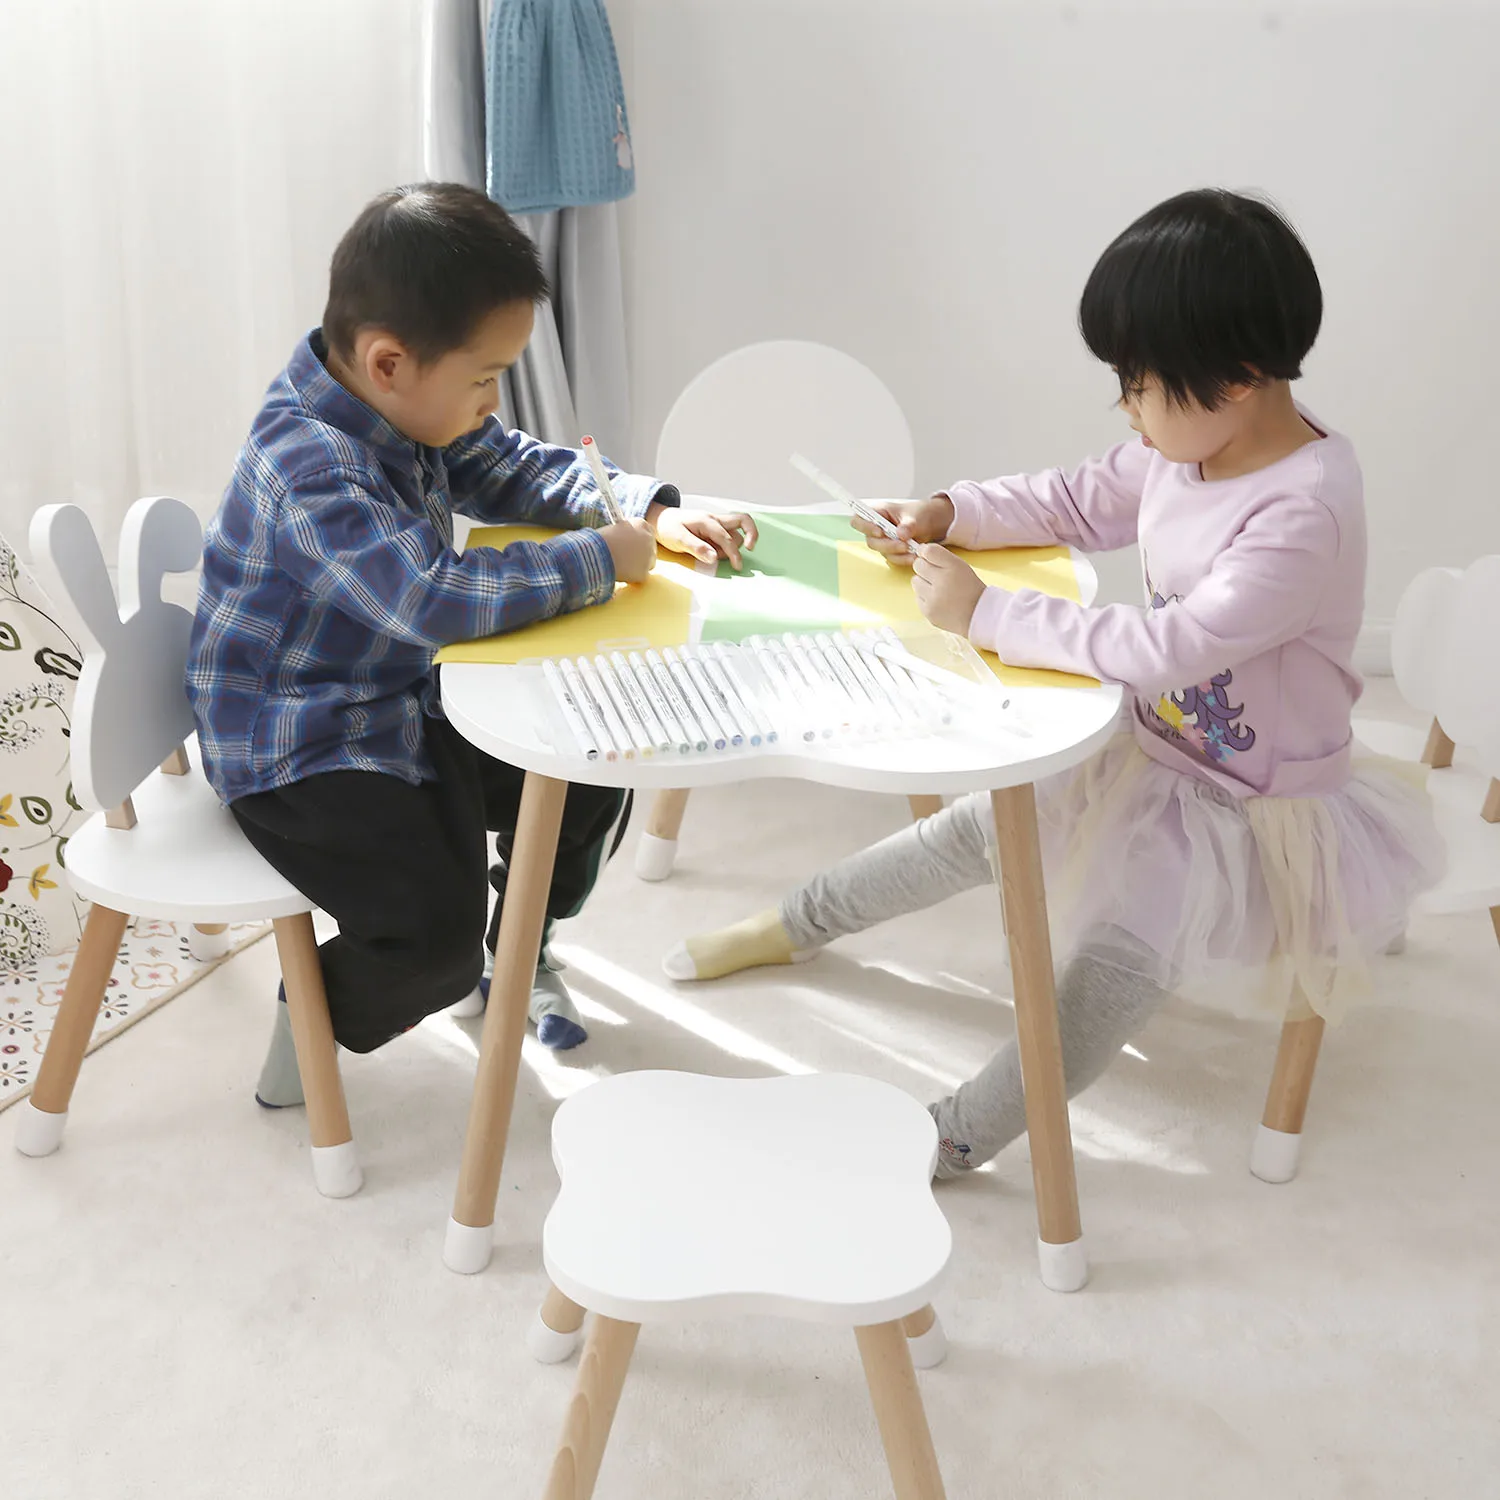 Tonglu 2020 горячая Распродажа детский стол для вечеринки деревянный учебный стол и Набор стульев Мебель для детского сада для детей